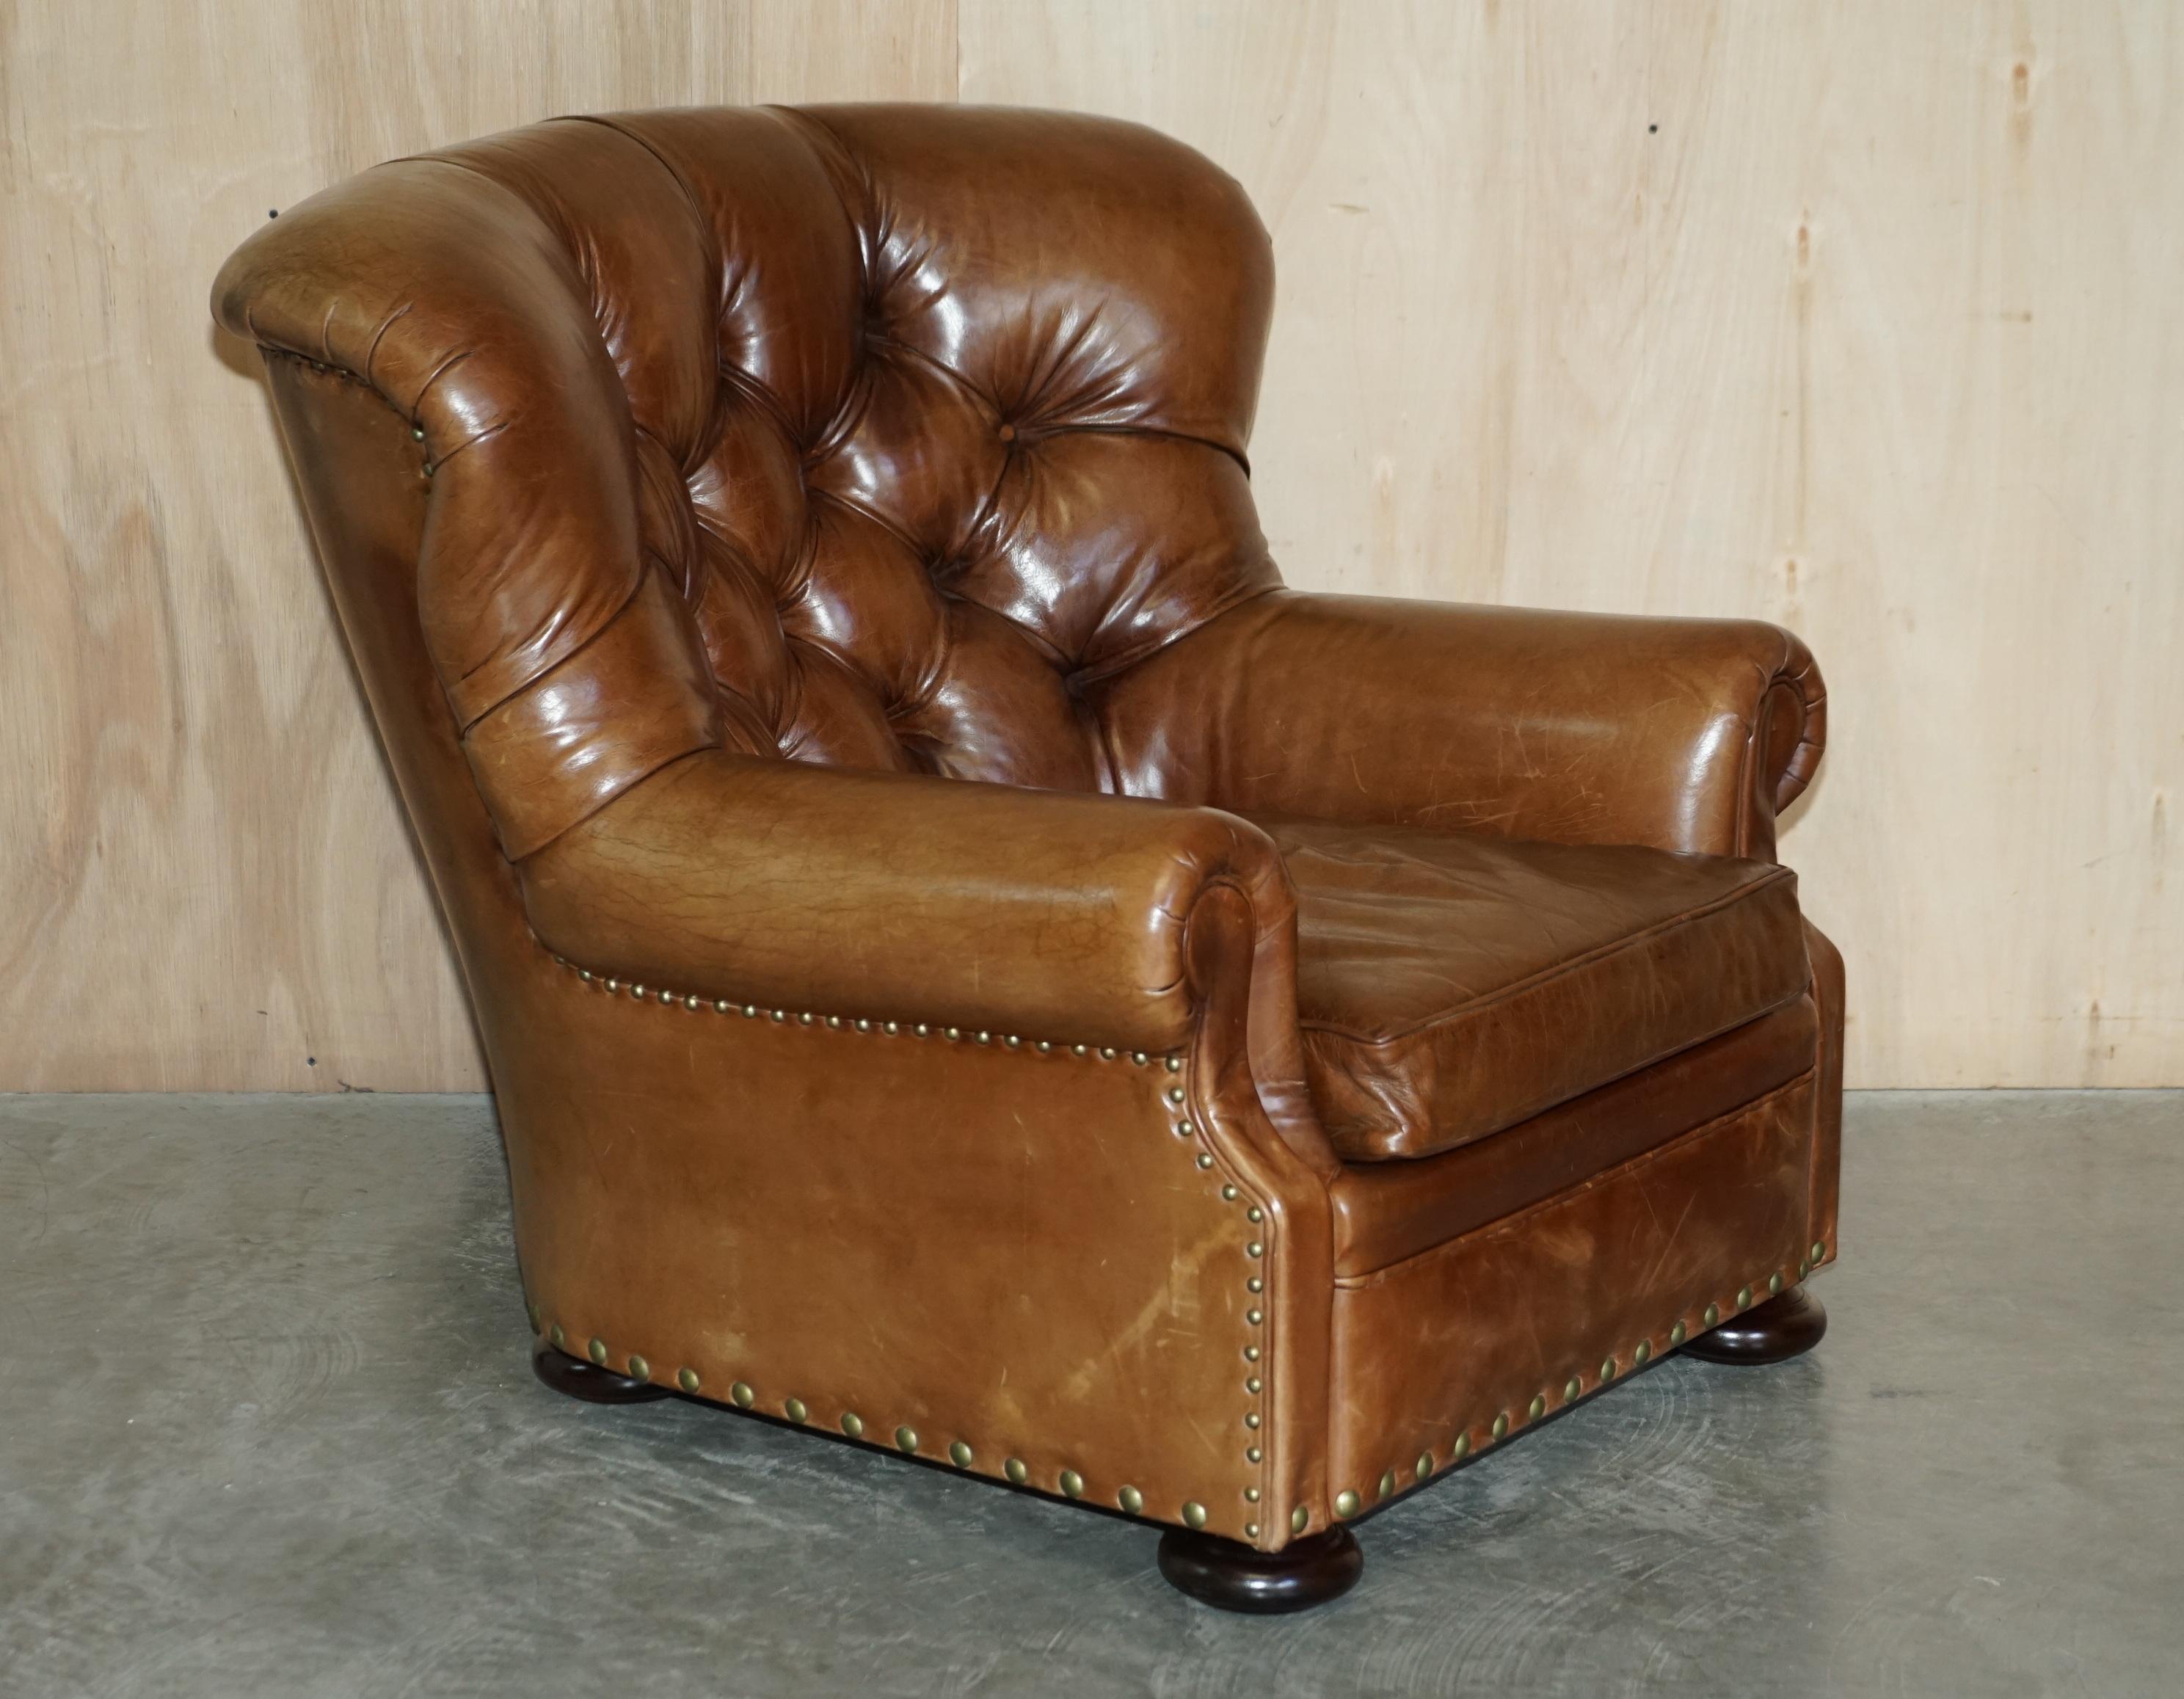 Nous avons le plaisir de proposer à la vente ce superbe fauteuil d'écrivain Ralph Lauren et son ottoman assorti RRP £15,745 en cuir vintage brun vieilli.

Un fantastique fauteuil iconique, l'original a fait la une de nombreux journaux en son